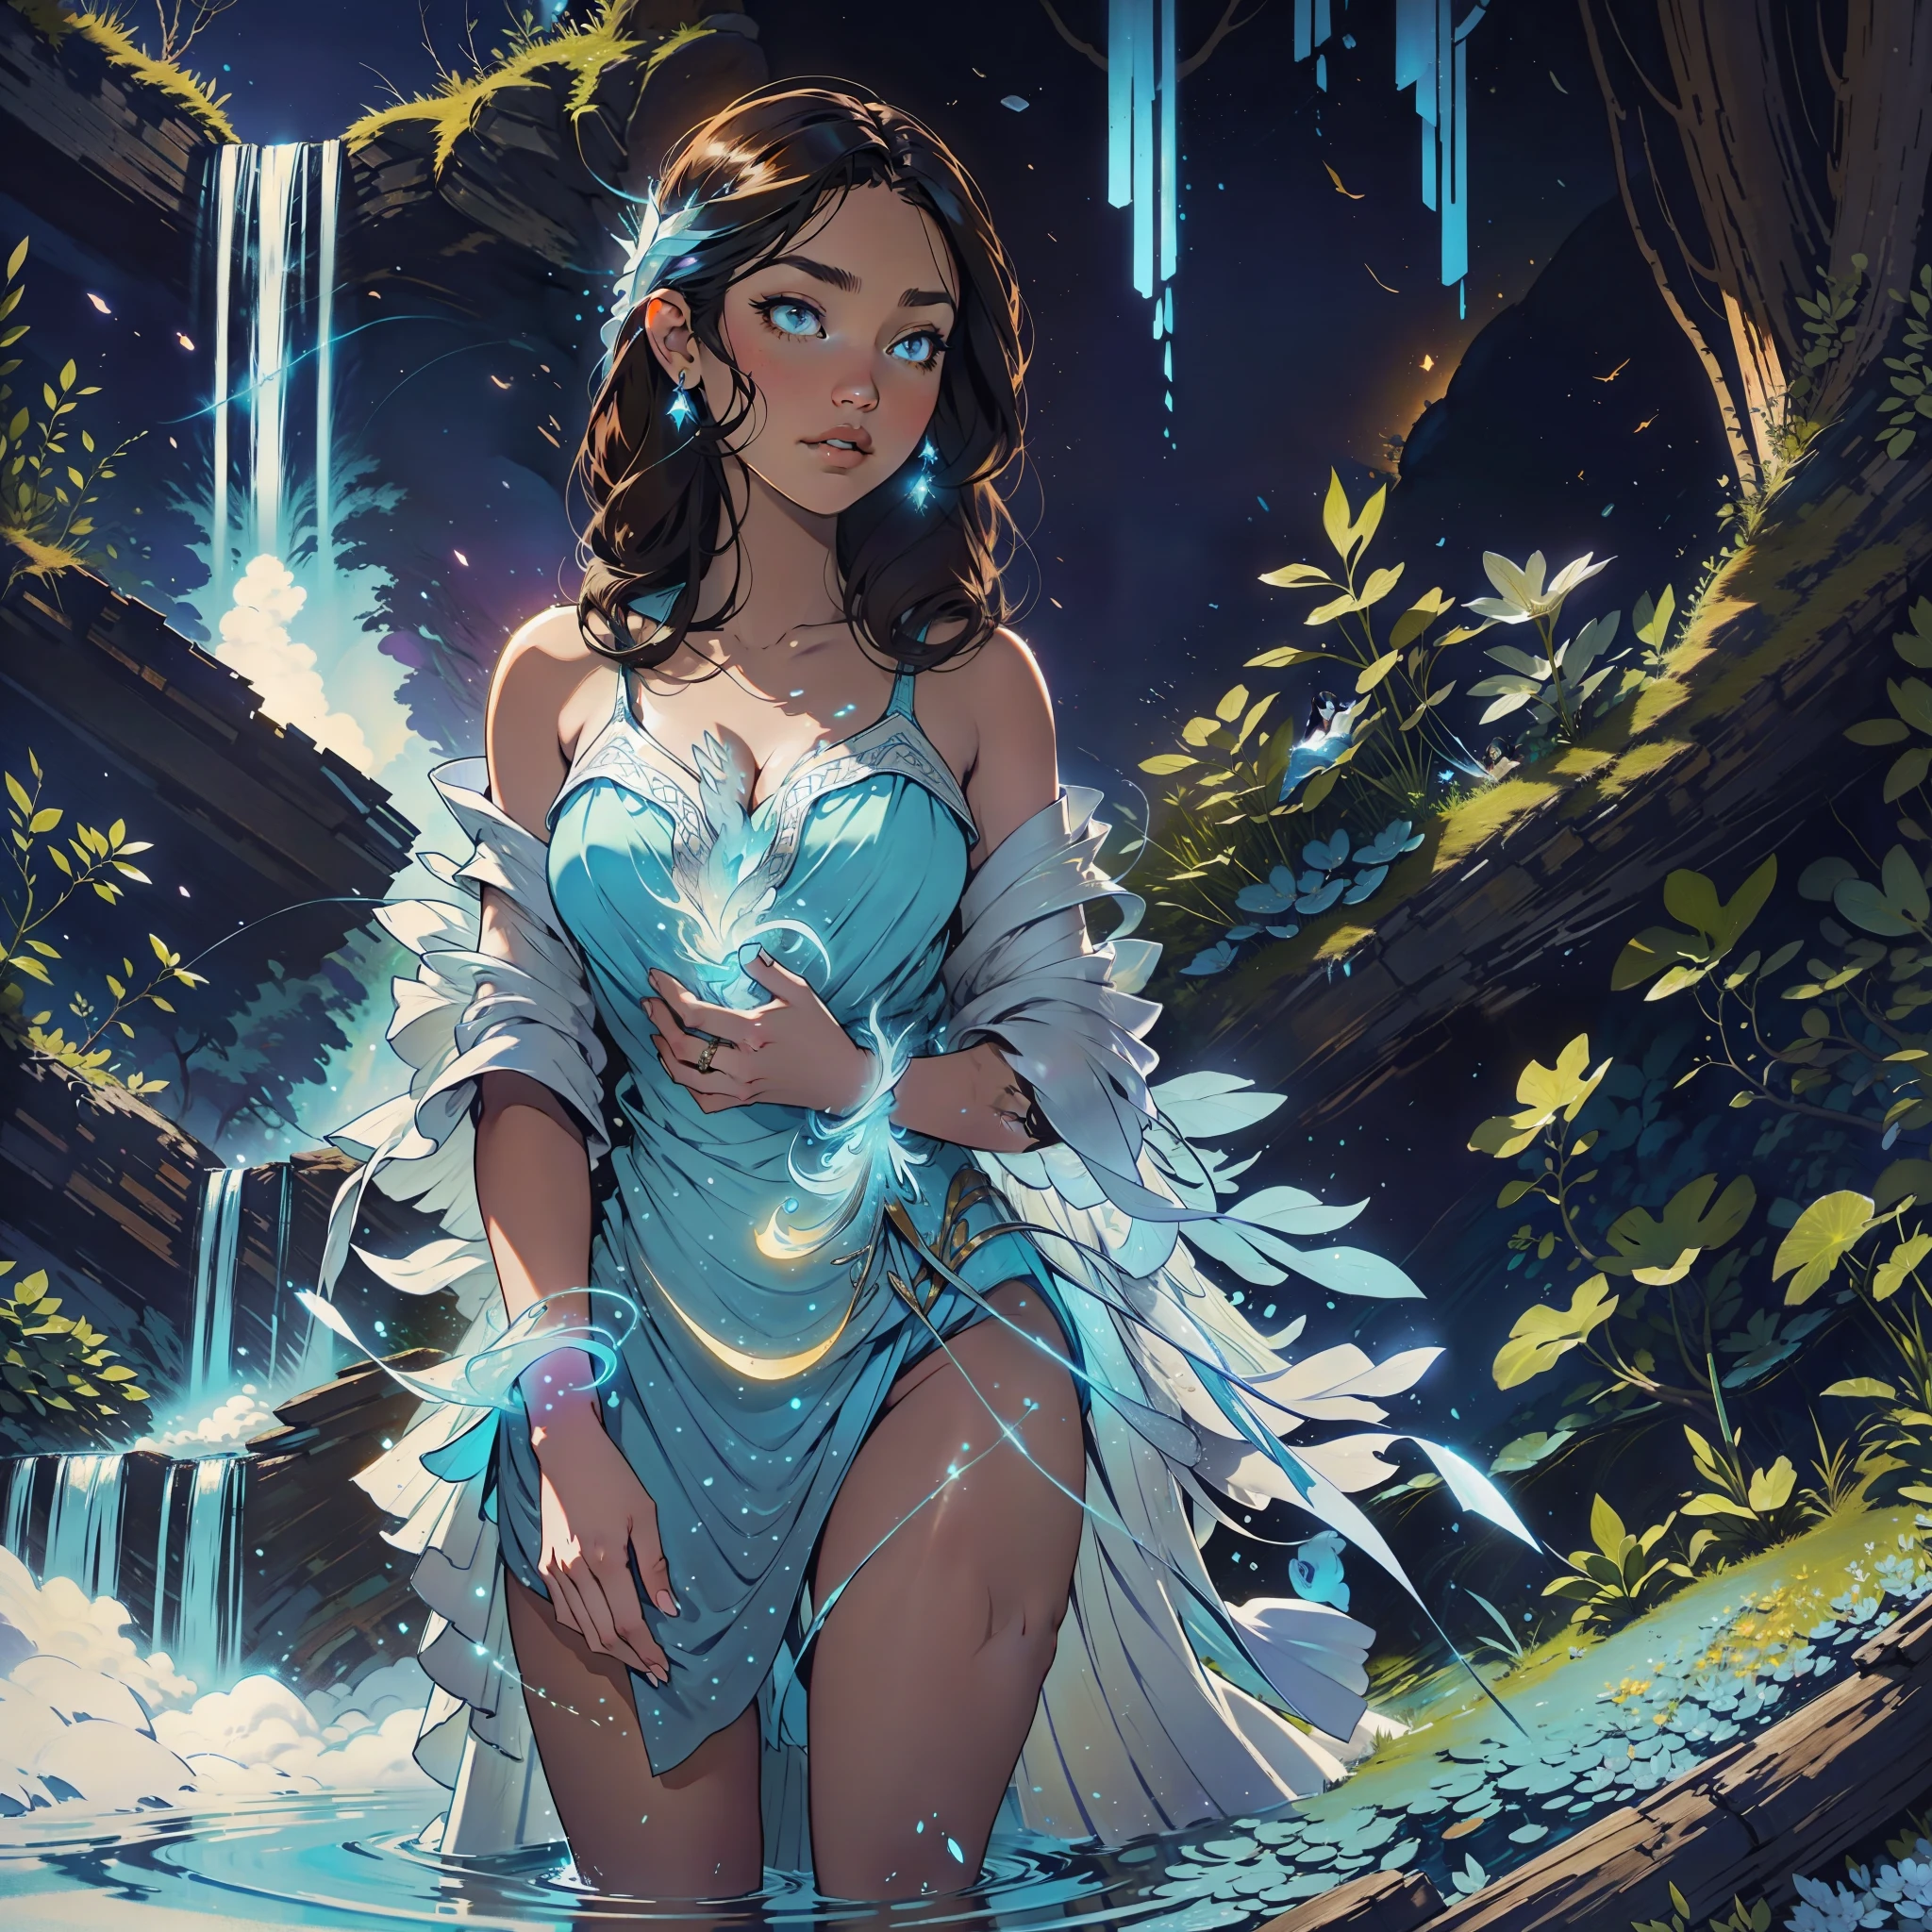 Uma mulher morena está parada em uma majestosa cachoeira que brilha em um suave tom azul enquanto cai pelo corpo da mulher que sente paz naquele lugar